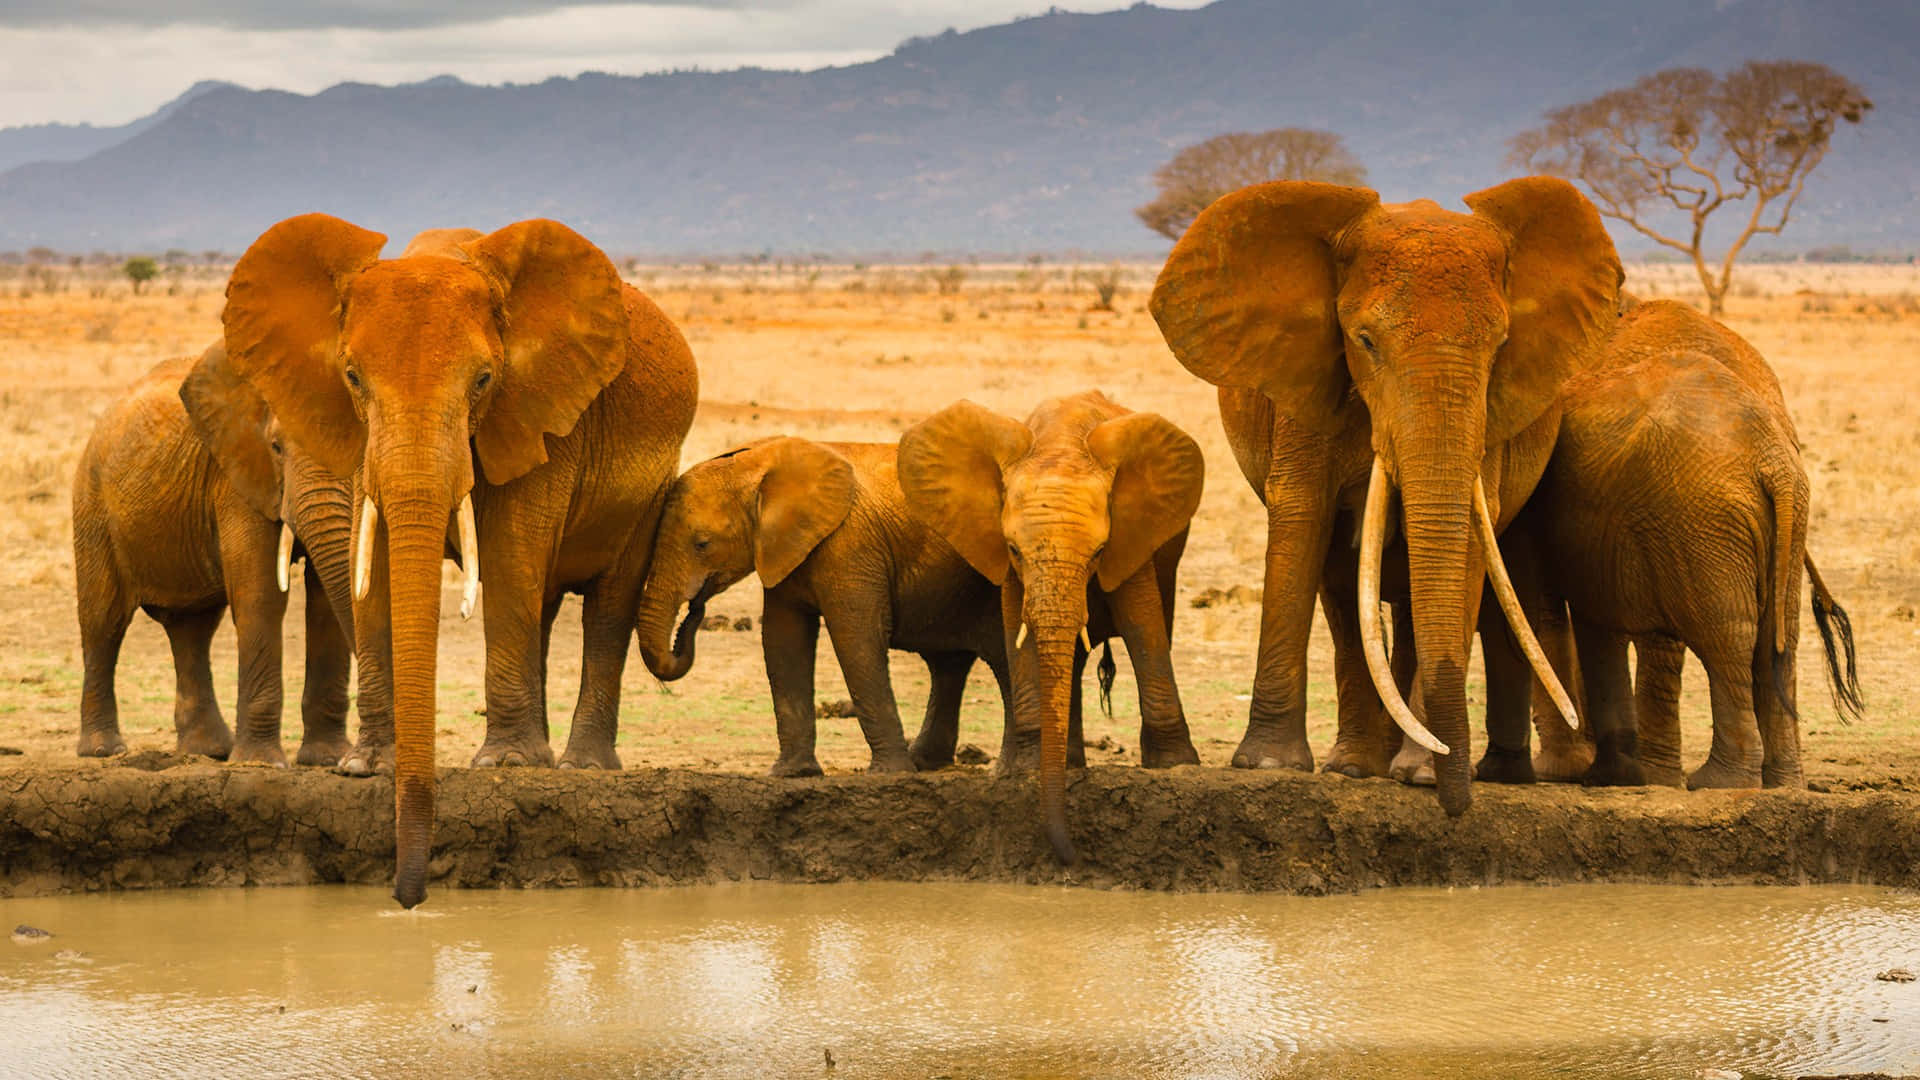 Imagende Safari Con León, Elefantes Y Vida Salvaje Africana.